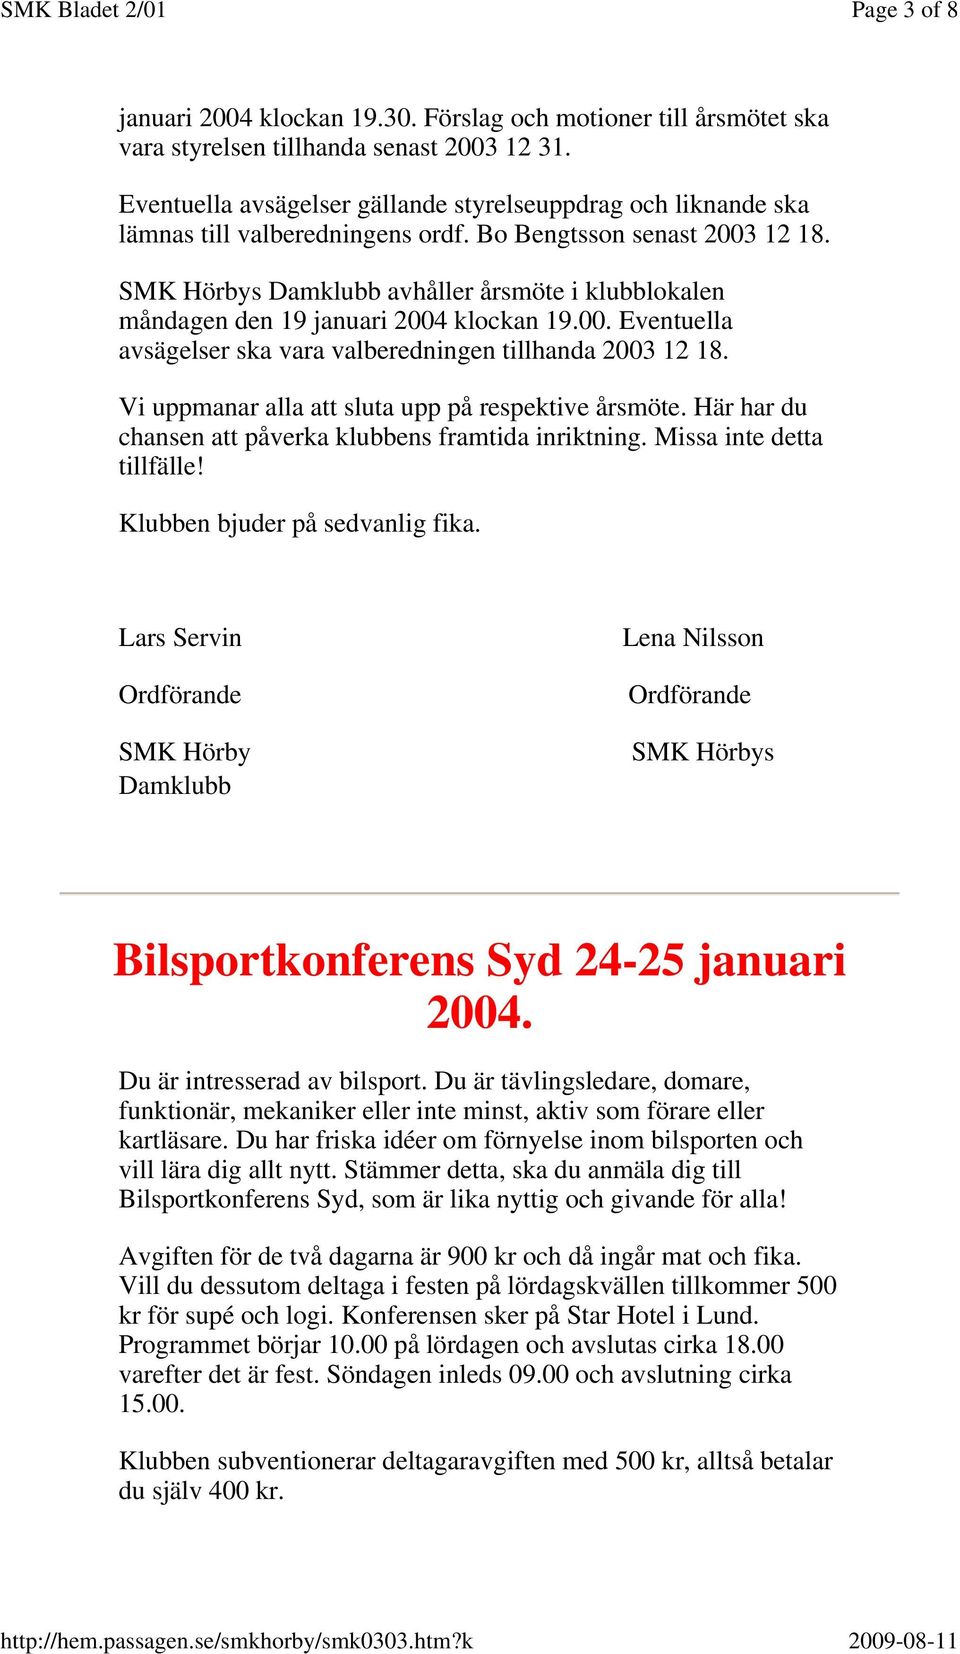 SMK Hörbys Damklubb avhåller årsmöte i klubblokalen måndagen den 19 januari 2004 klockan 19.00. Eventuella avsägelser ska vara valberedningen tillhanda 2003 12 18.